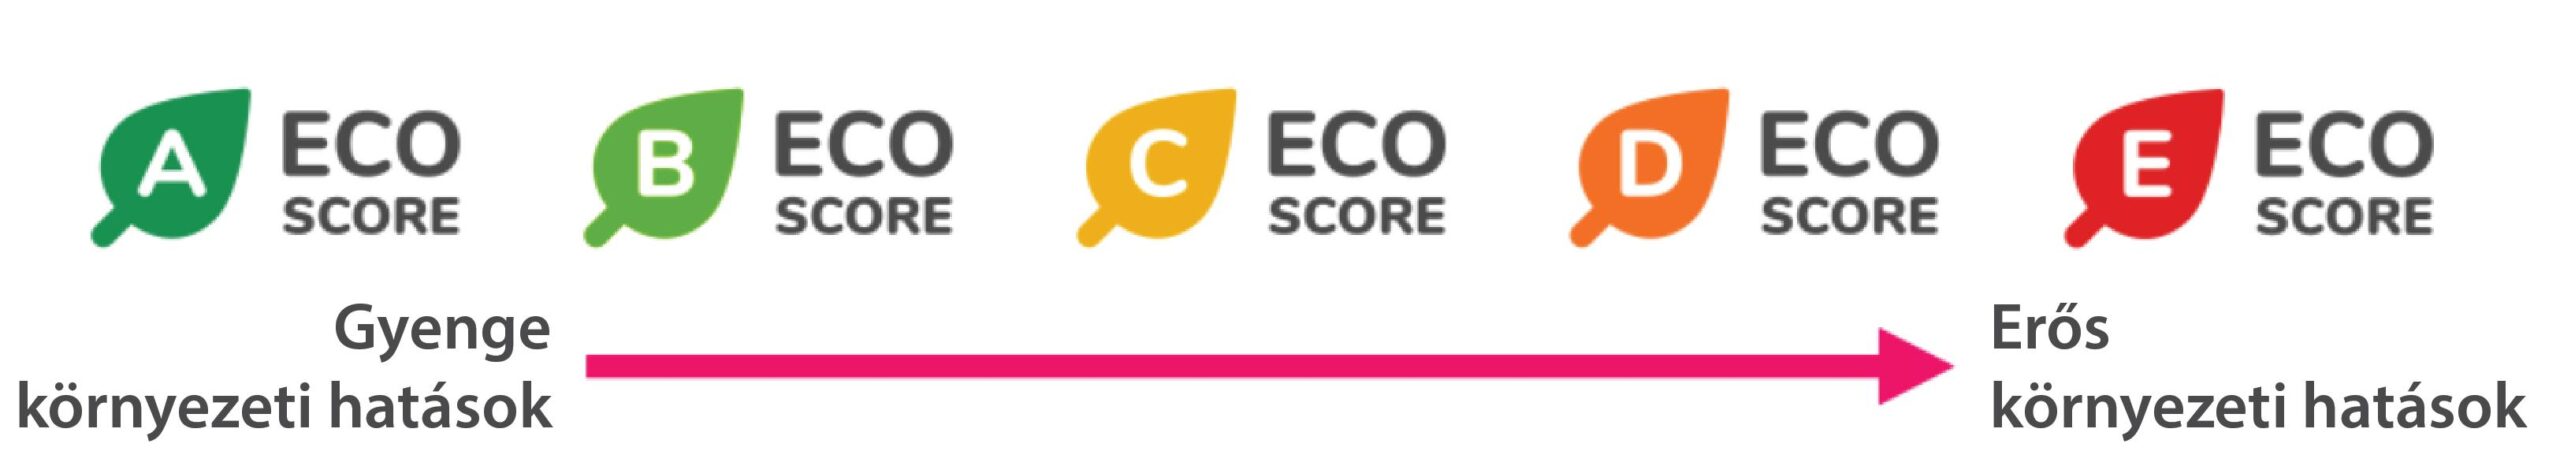 ECO score fenttarthatósági jelölés élelmiszer